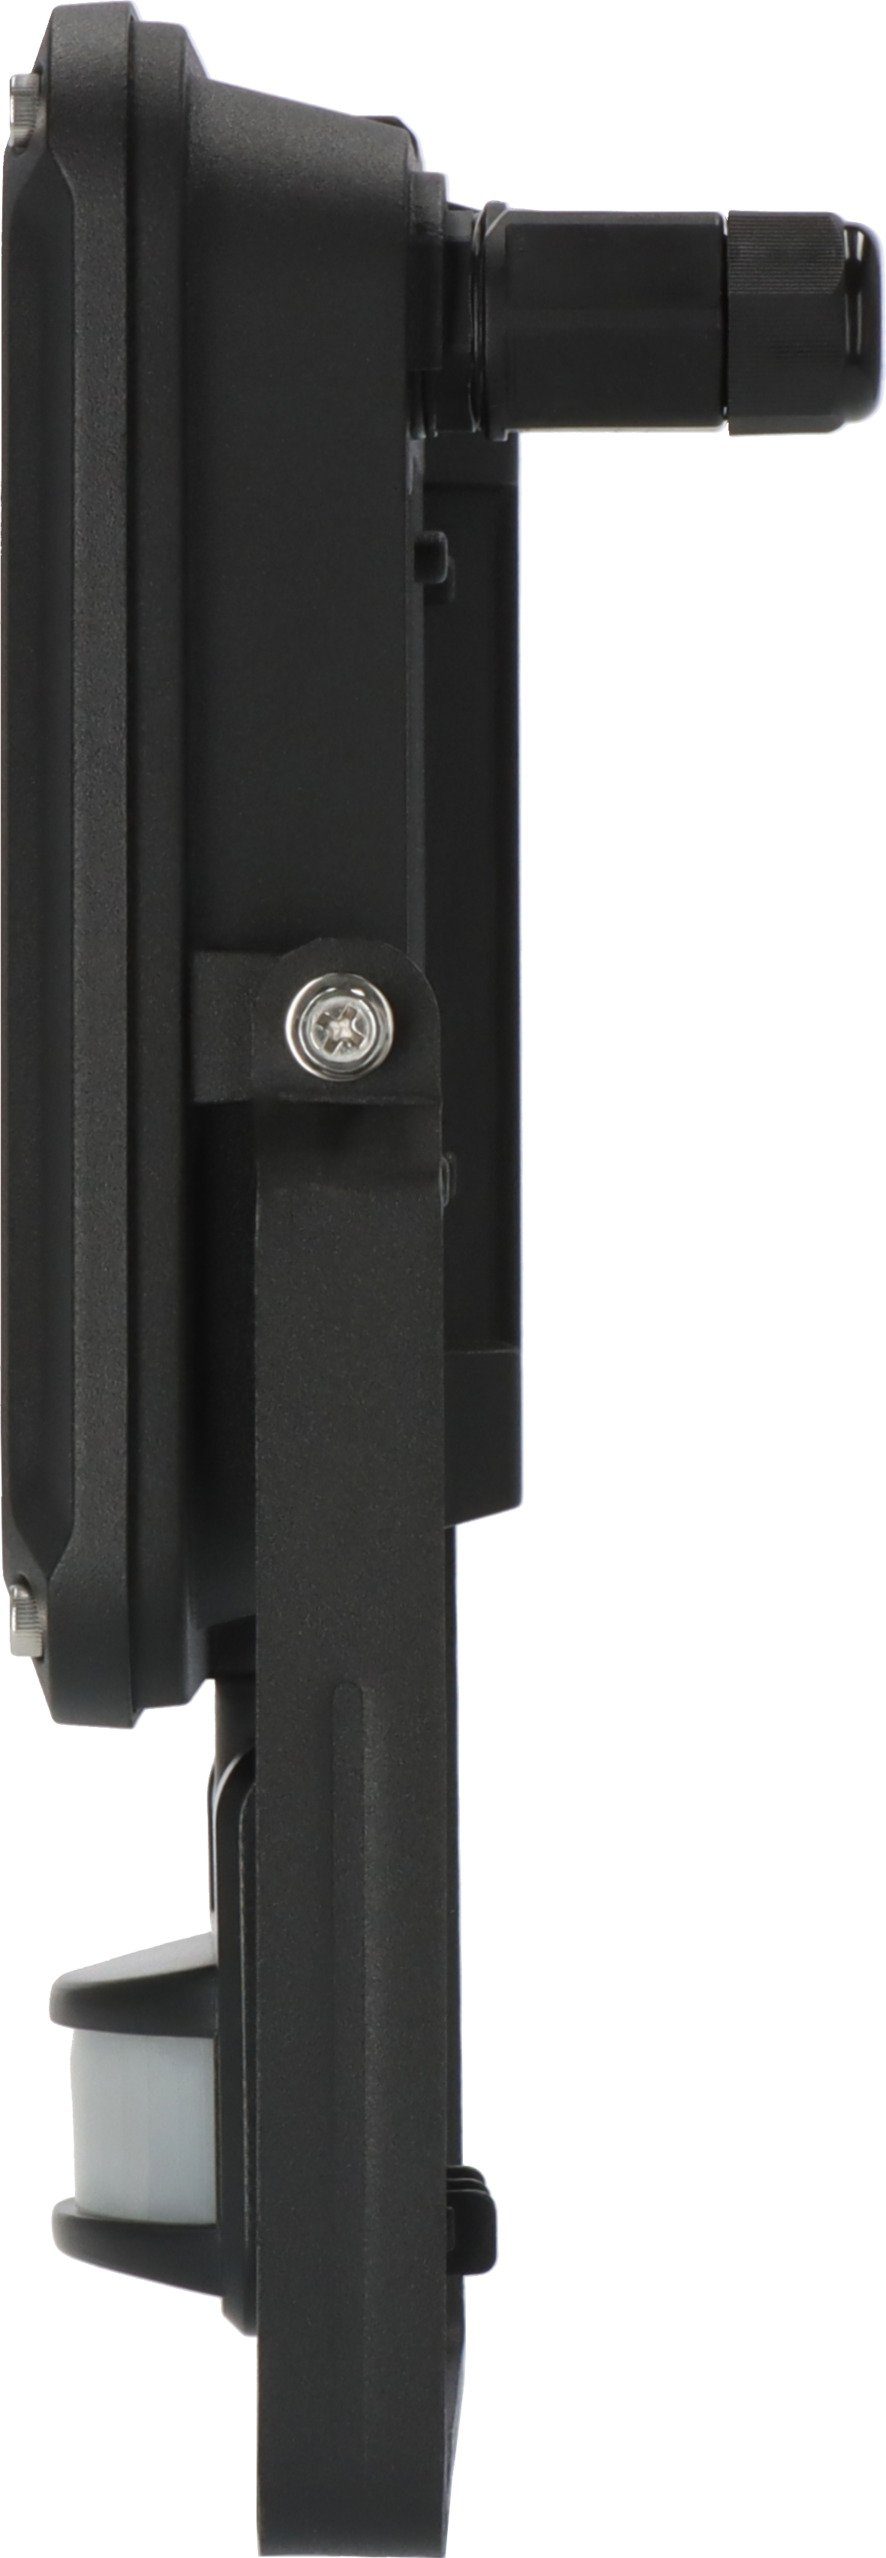 7060 für LED JARO Wandstrahler Bewegungsmelder mit LED außen, P, integriert, Brennenstuhl fest